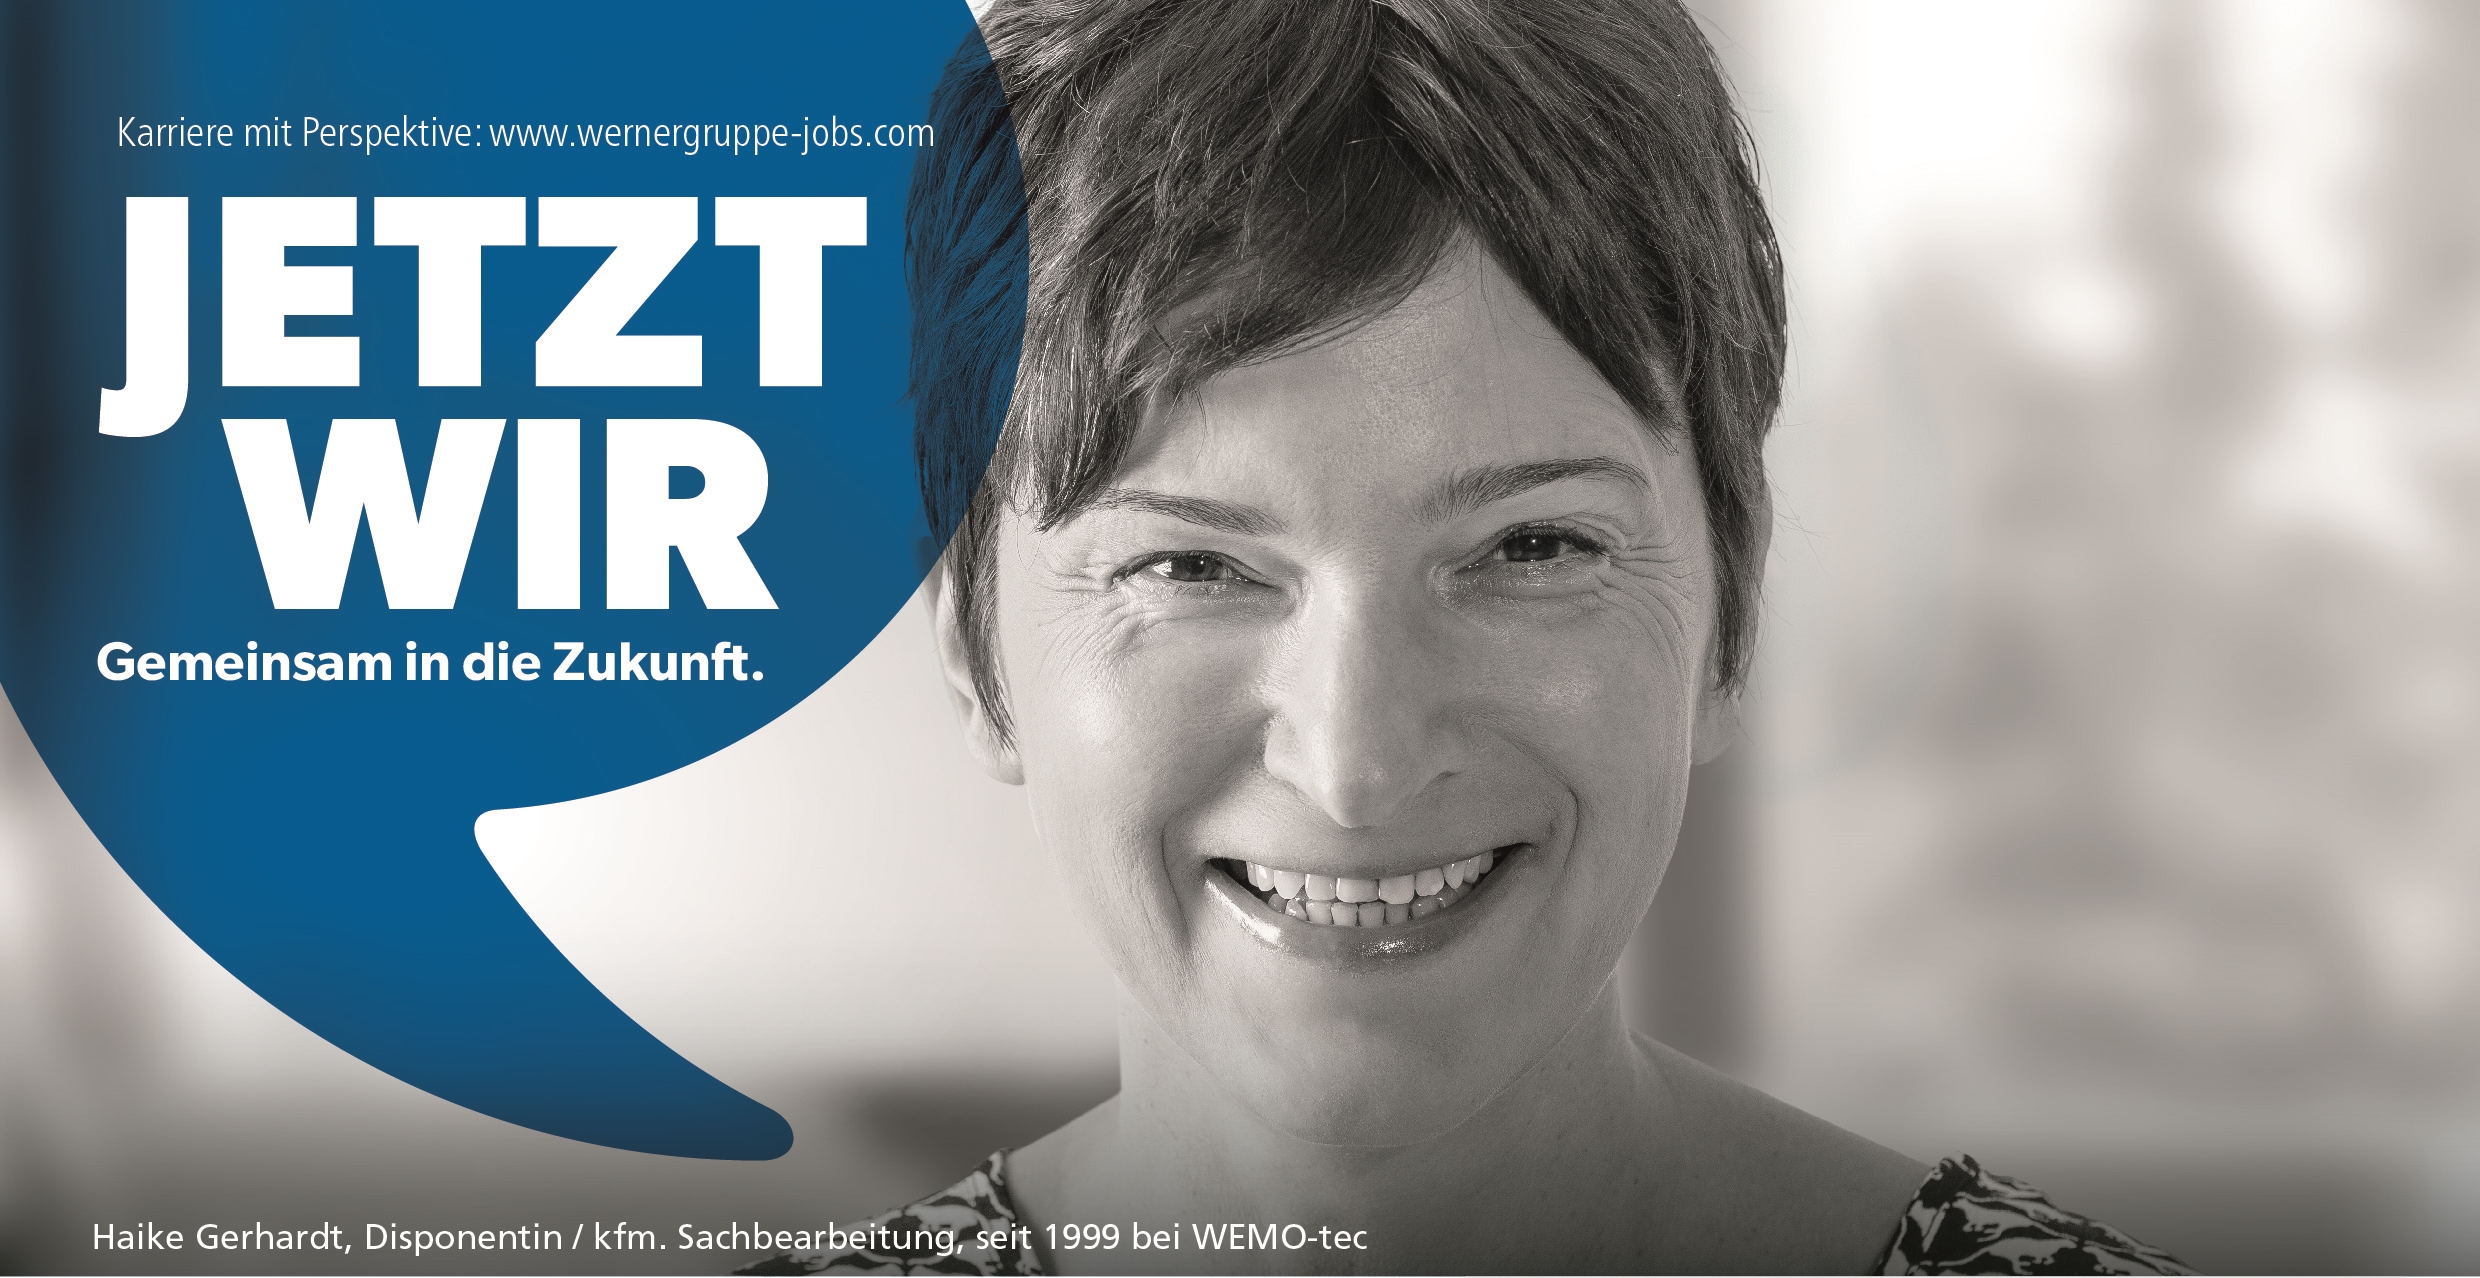 Banner with text: Jetzt wir, gemeinsam in die Zukunft.